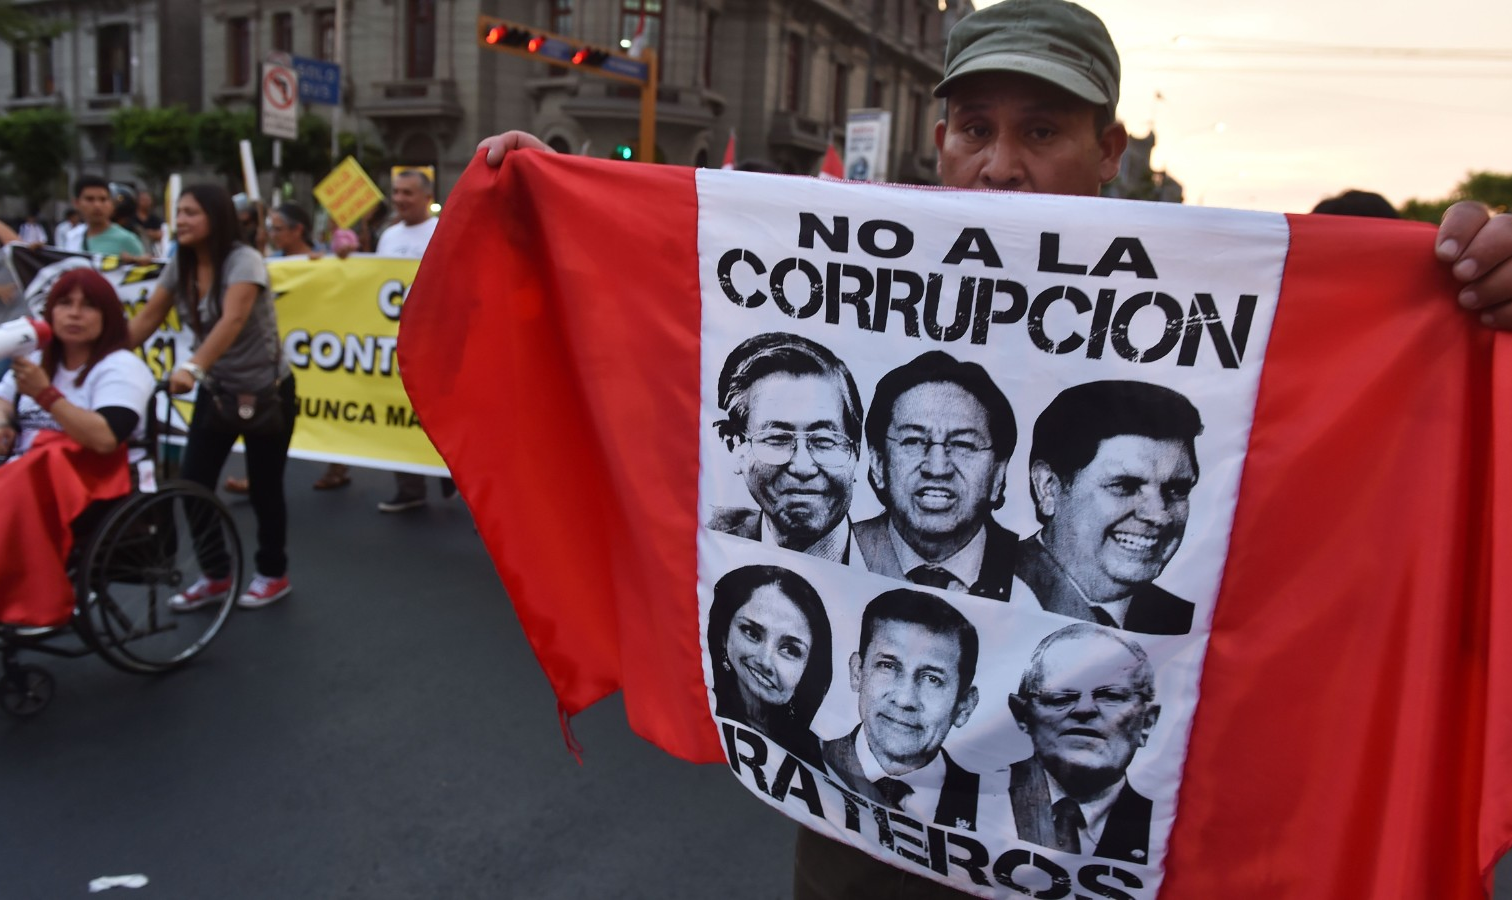 Reflexão de Jorge Rendón, professor e colaborador de Diálogos do Sul questiona se a República da Corrupção poderia estar engendrando, por fim, uma Revolução